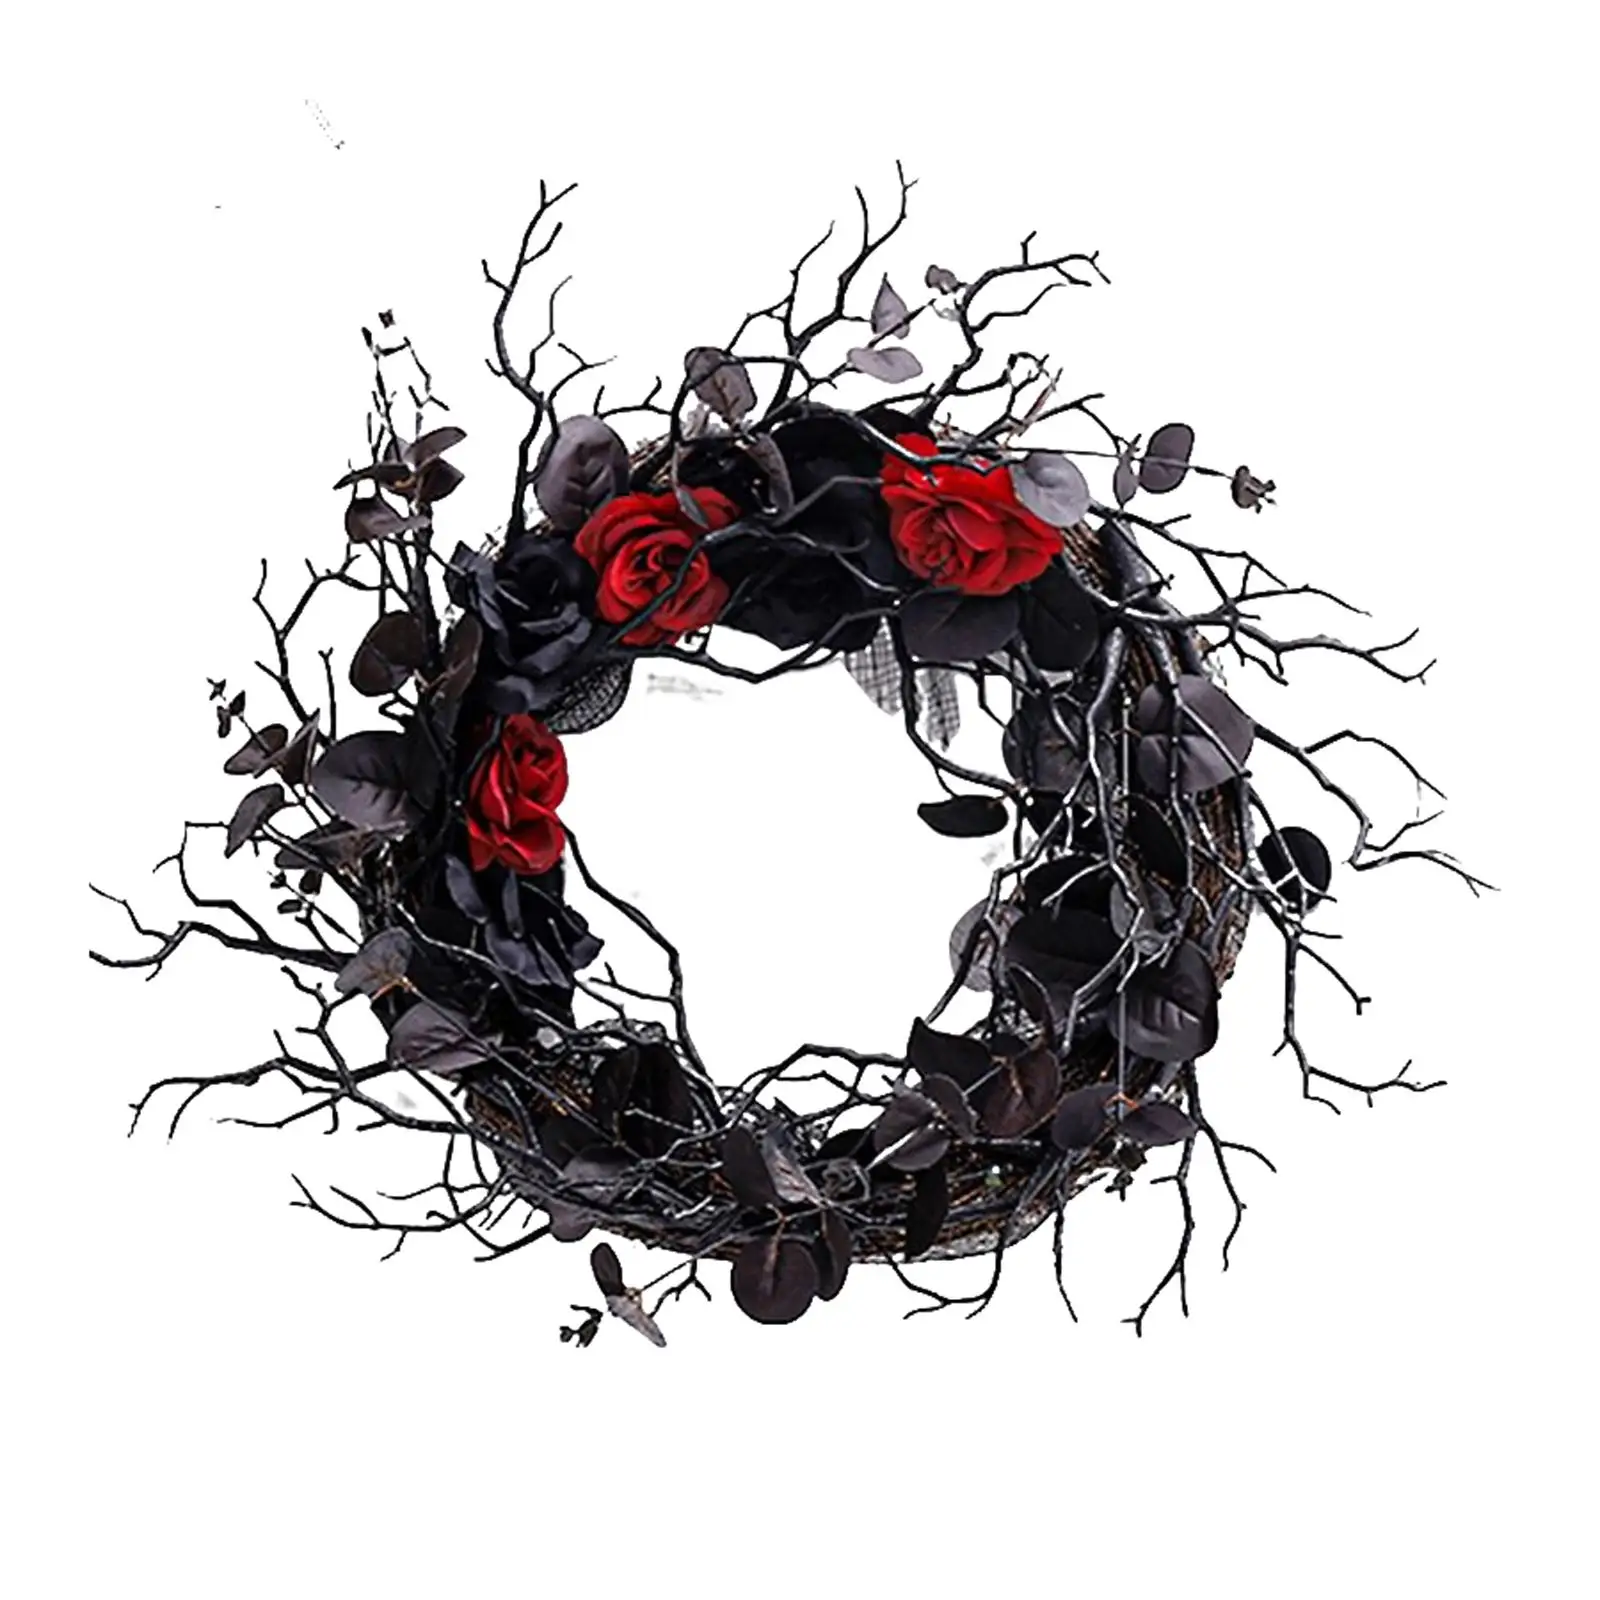 Artificial Halloween Wreath Black Red for Door Decorations Home Window Decor